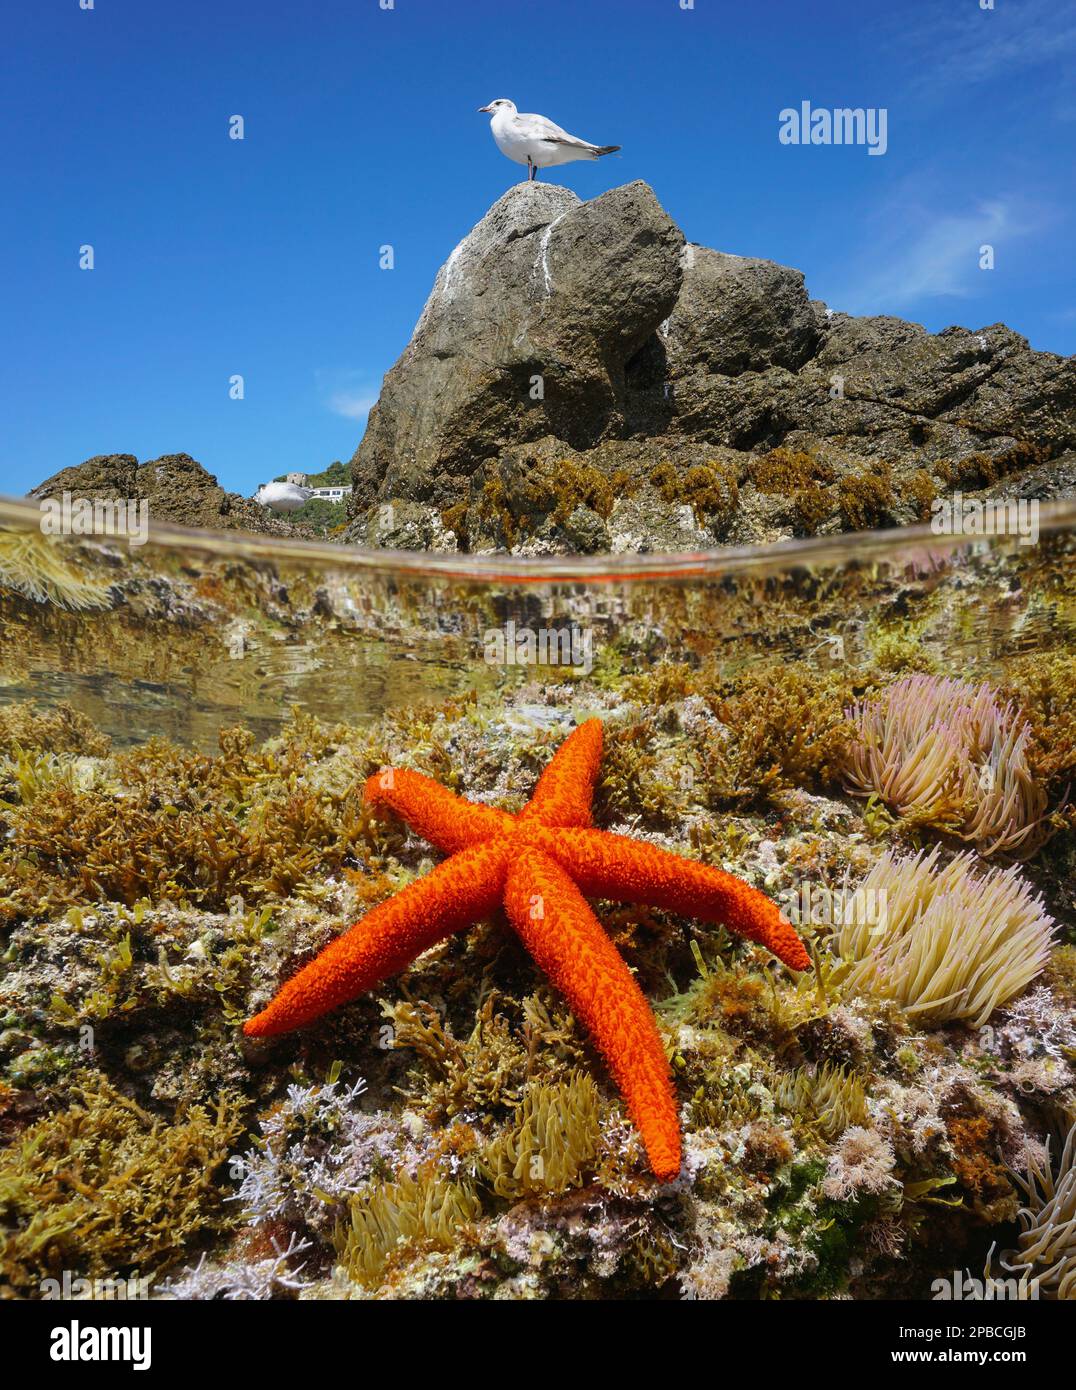 Starfish sous l'eau et un oiseau de mouette sur un rocher, mer Méditerranée, vue sur et sous la surface de l'eau, Espagne, Catalogne Banque D'Images